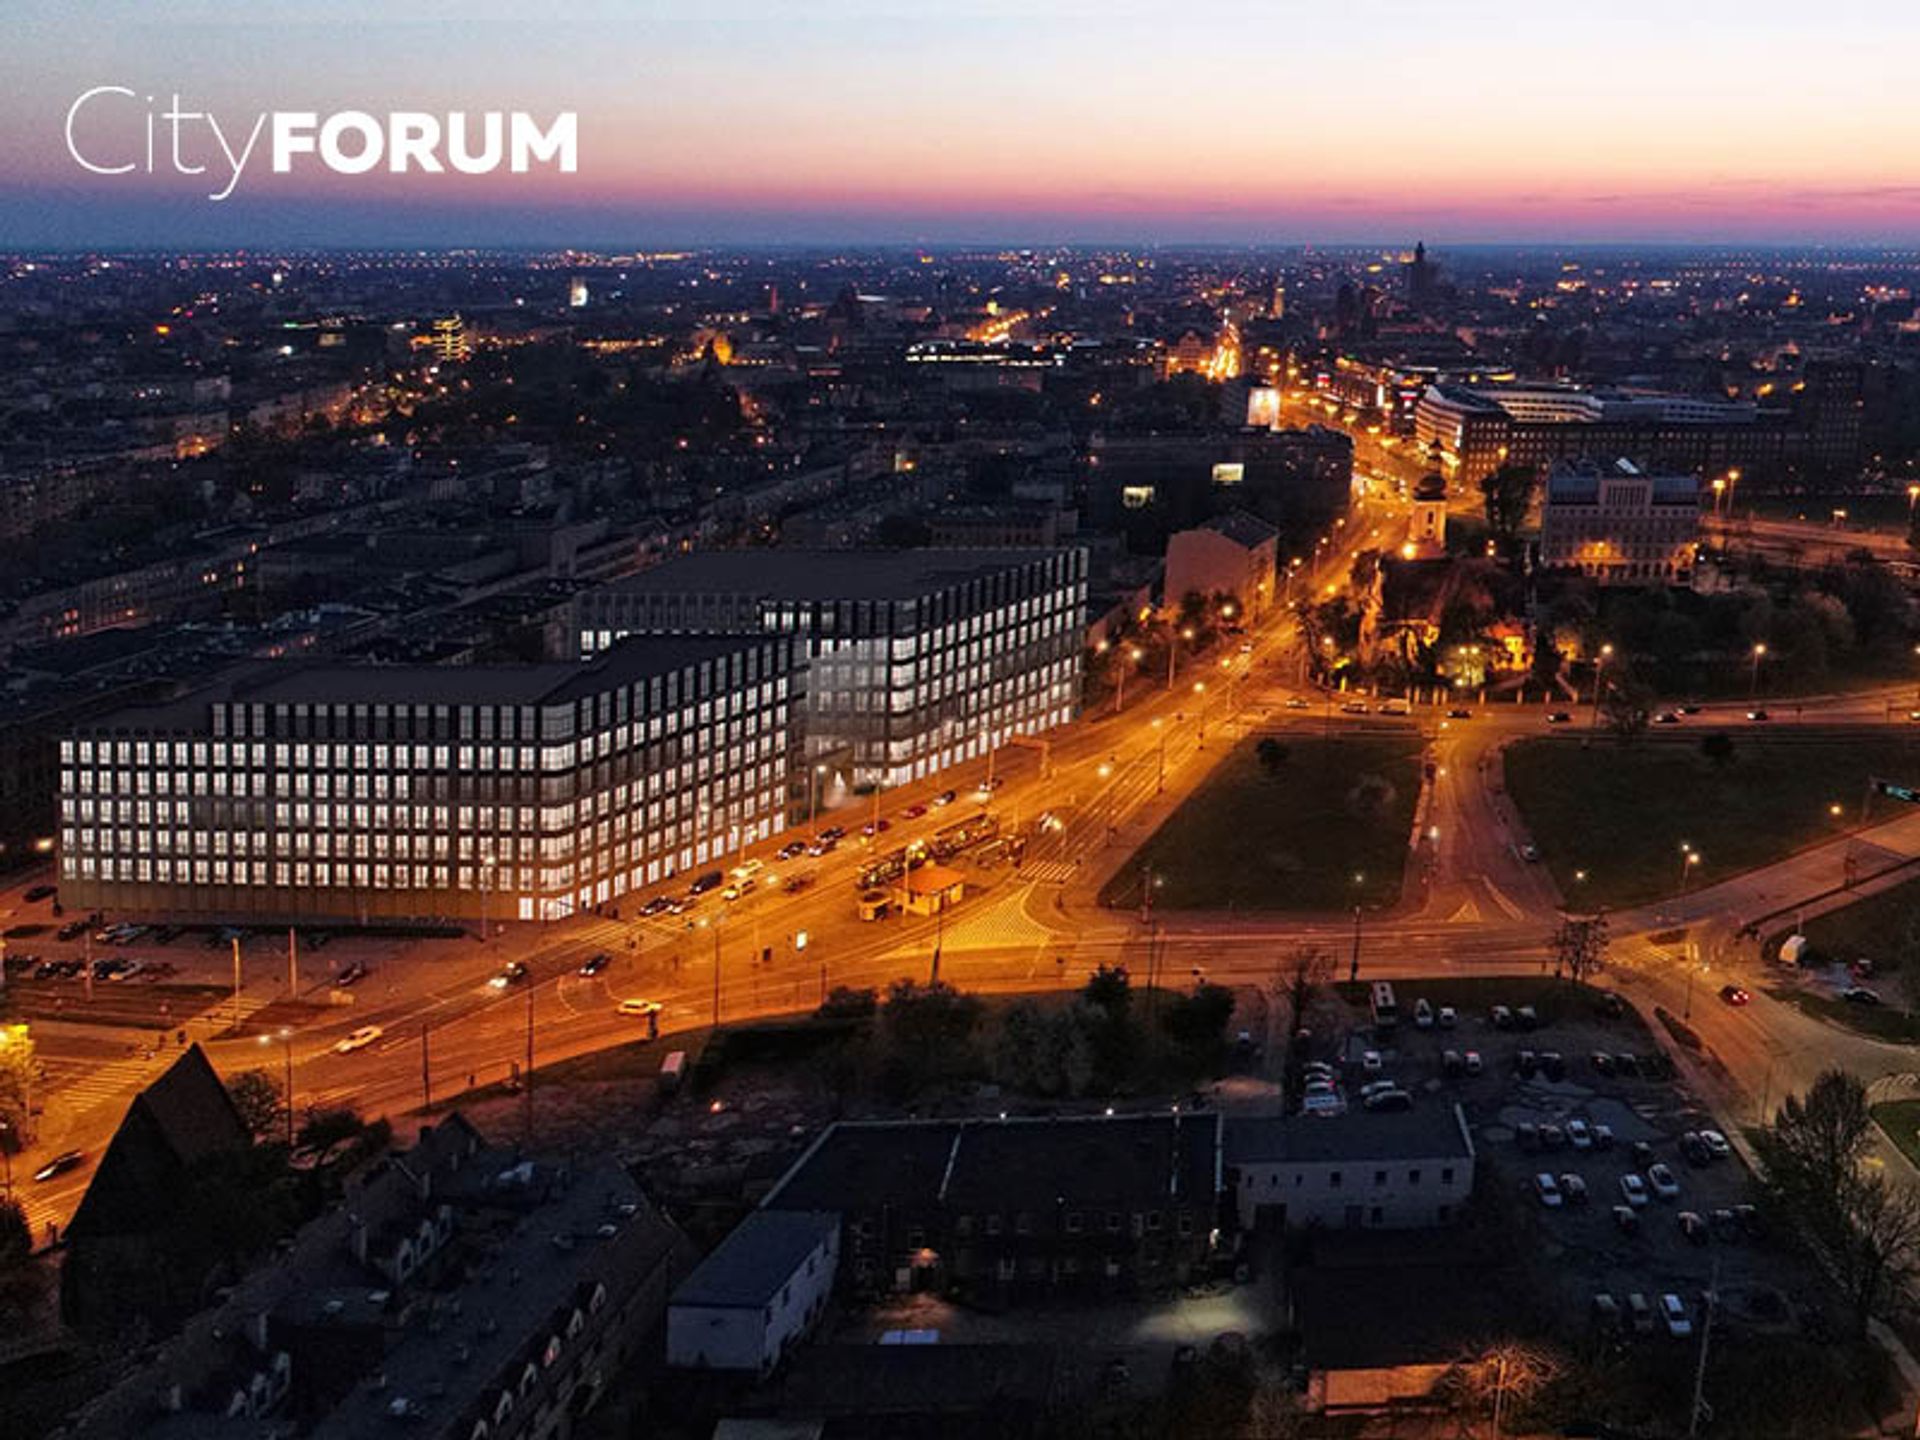  Archicom wprowadza do oferty City Forum – kompleks biurowy w sercu Wrocławia